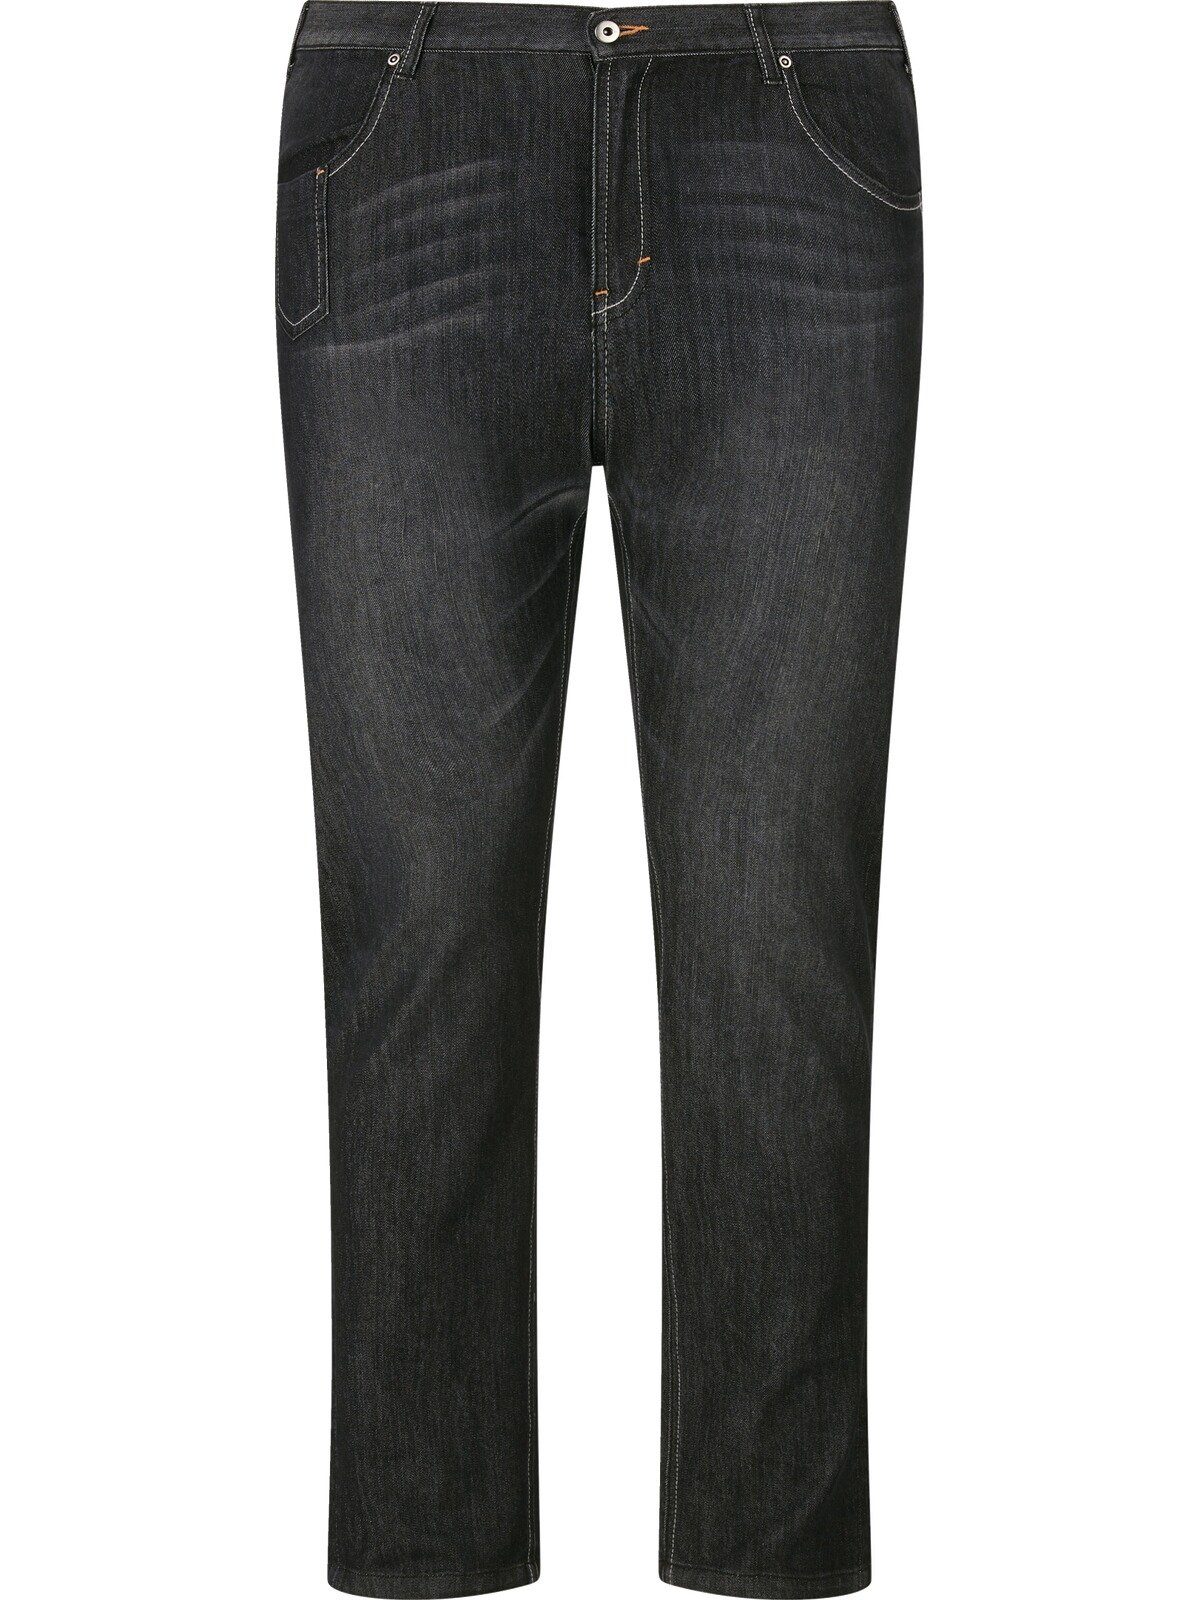 Charles Colby 5-Pocket-Jeans Five-Pocket-Design CASSANDER, BARON schwarz